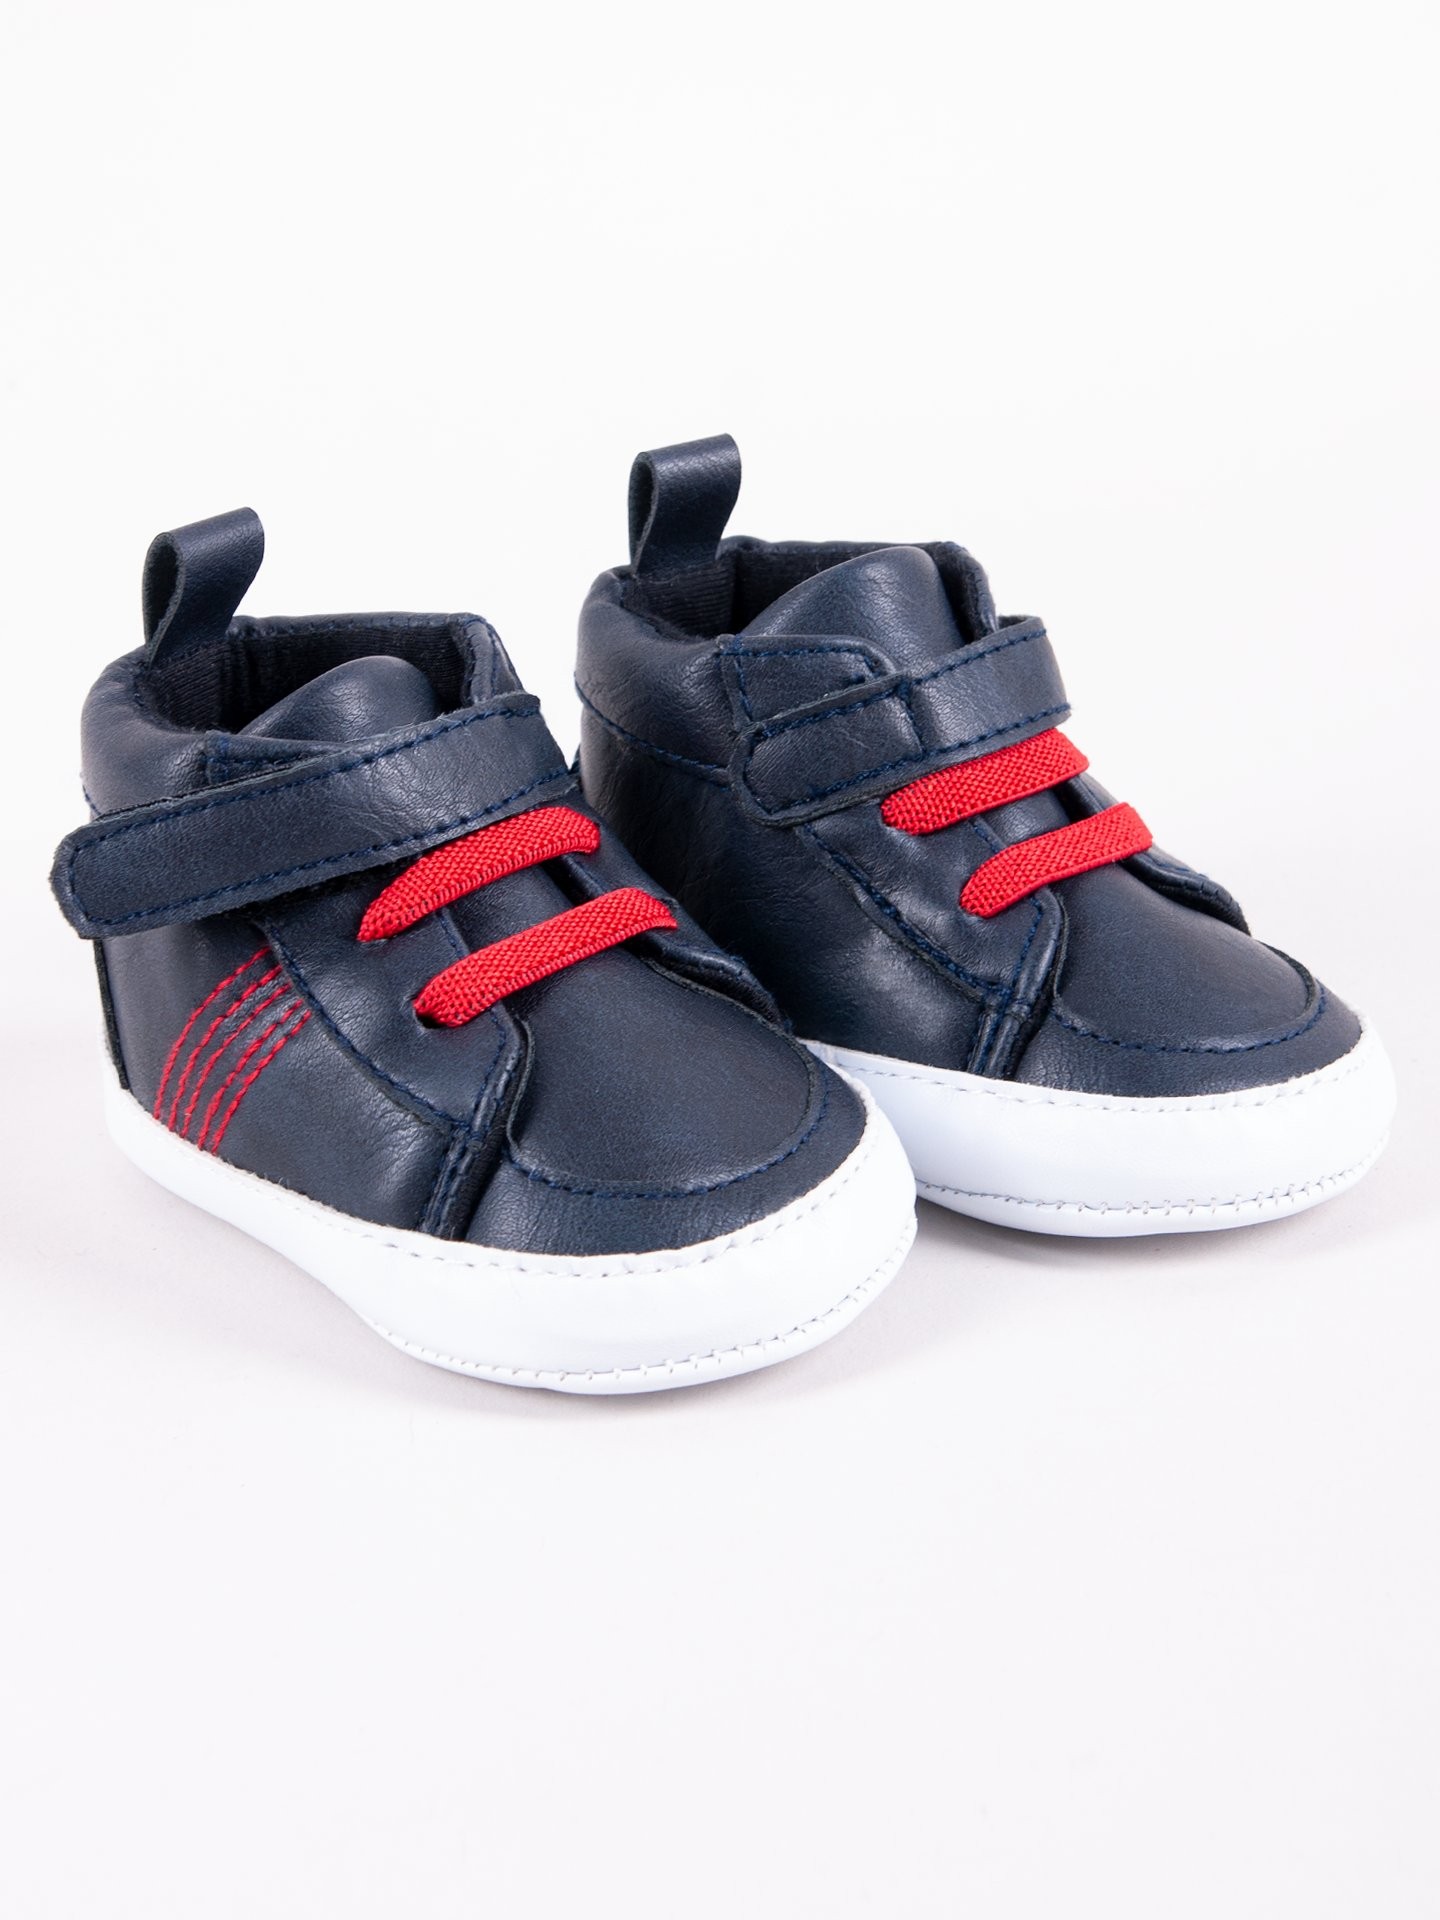 Levně Yoclub Kids's Baby Boy's Shoes OBO-0200C-6100 Navy Blue